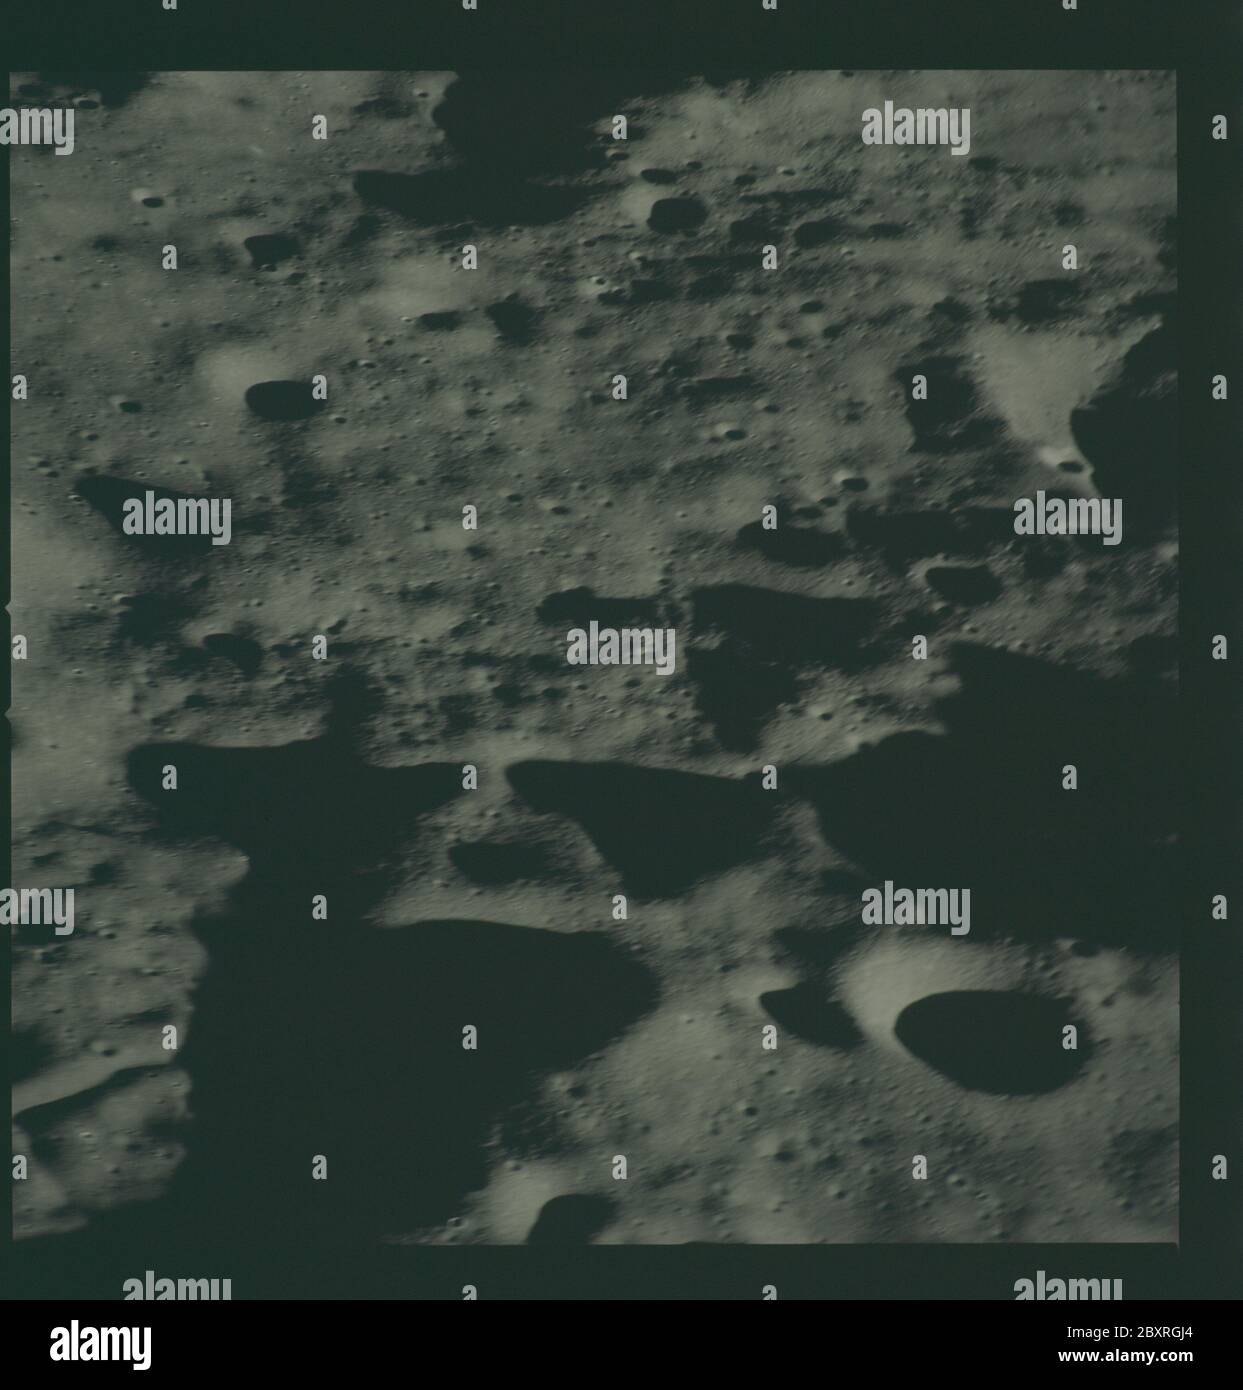 AS14-72-9955 - Apollo 14 - Apollo 14 image de mission - vue au sud-est à partir d'un point à l'ouest du cratère de Chaplygin et à l'est du cratère de Vill'EV.; portée et contenu: La base de données originale décrit ceci comme: Description: Vue vers le sud-est depuis un point à l'ouest du cratère de Chaplygin et à l'est du cratère de Vil'EV. Des images ont été prises pendant la Révolution 14 de la mission Apollo 14. Le magasin original de film a été étiqueté L, le type de film était CEX S0-368 (EKTACHROME MS, Color Reversal), objectif de 500 mm avec une élévation du soleil de 7 degrés. L'échelle de photo approximative était de 1:1,360,000. La latitude de point principal était de 5,5S Banque D'Images